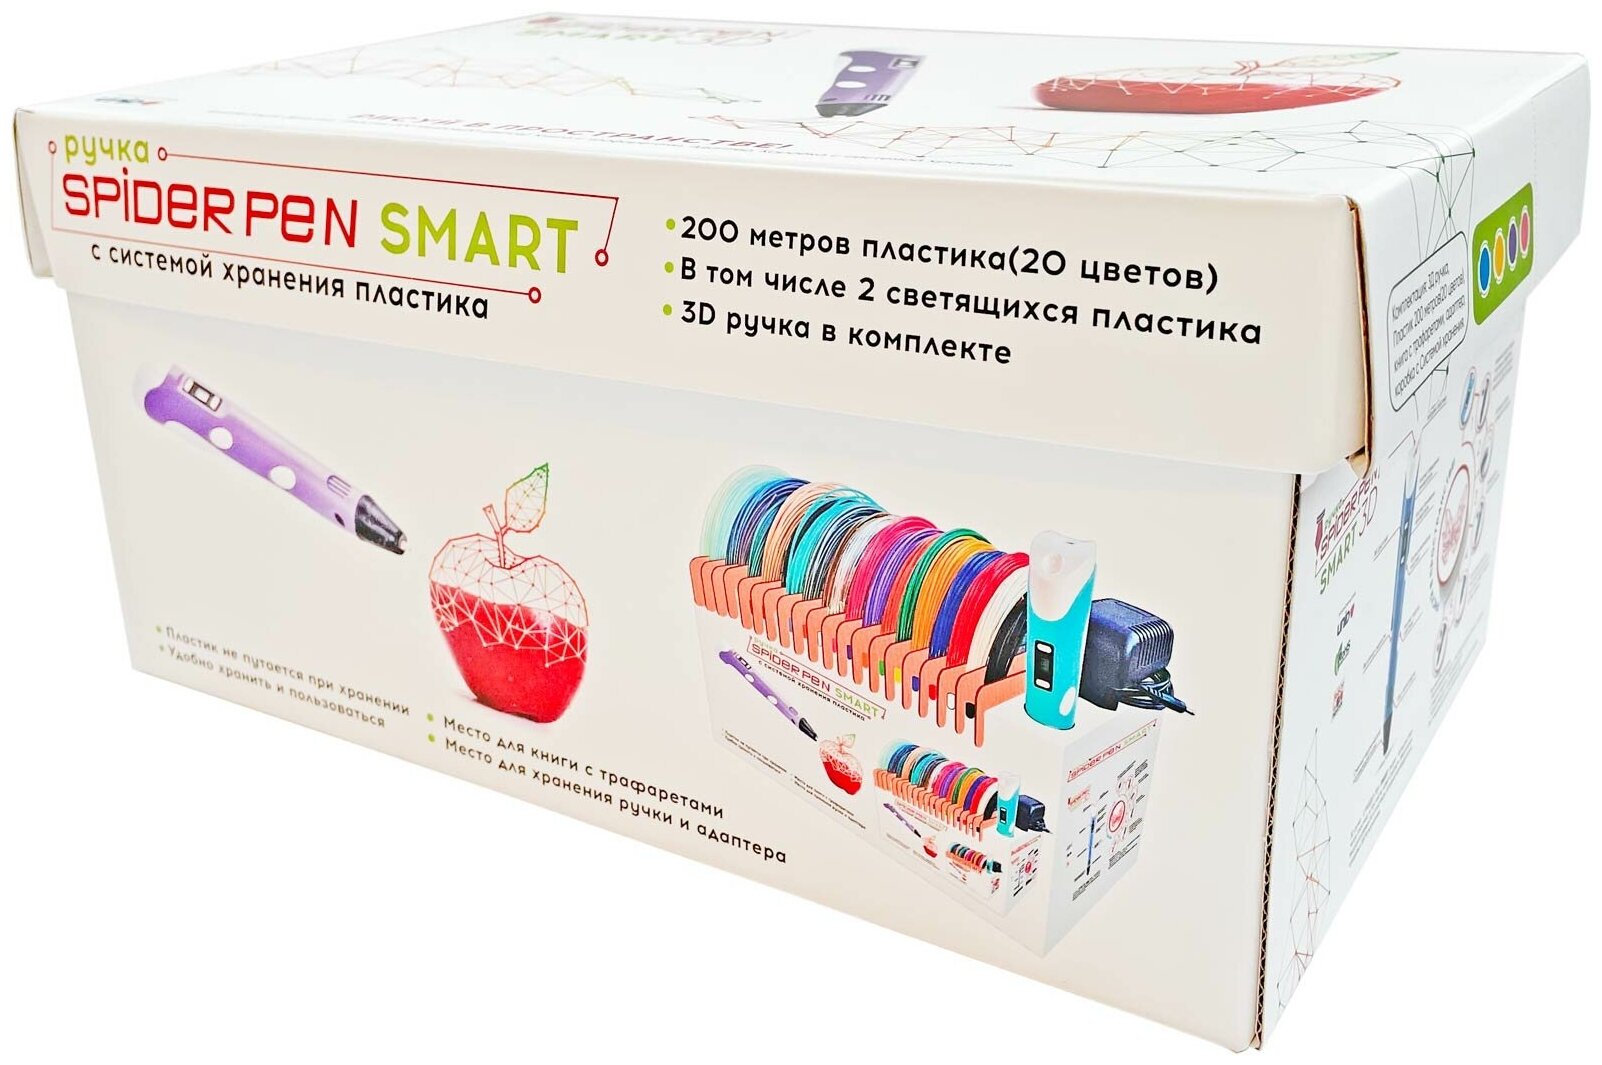 3D ручка Spider Pen Smart 10 игр Книга трафаретов 20 цветов Система хранения Голубая SMRT10-B